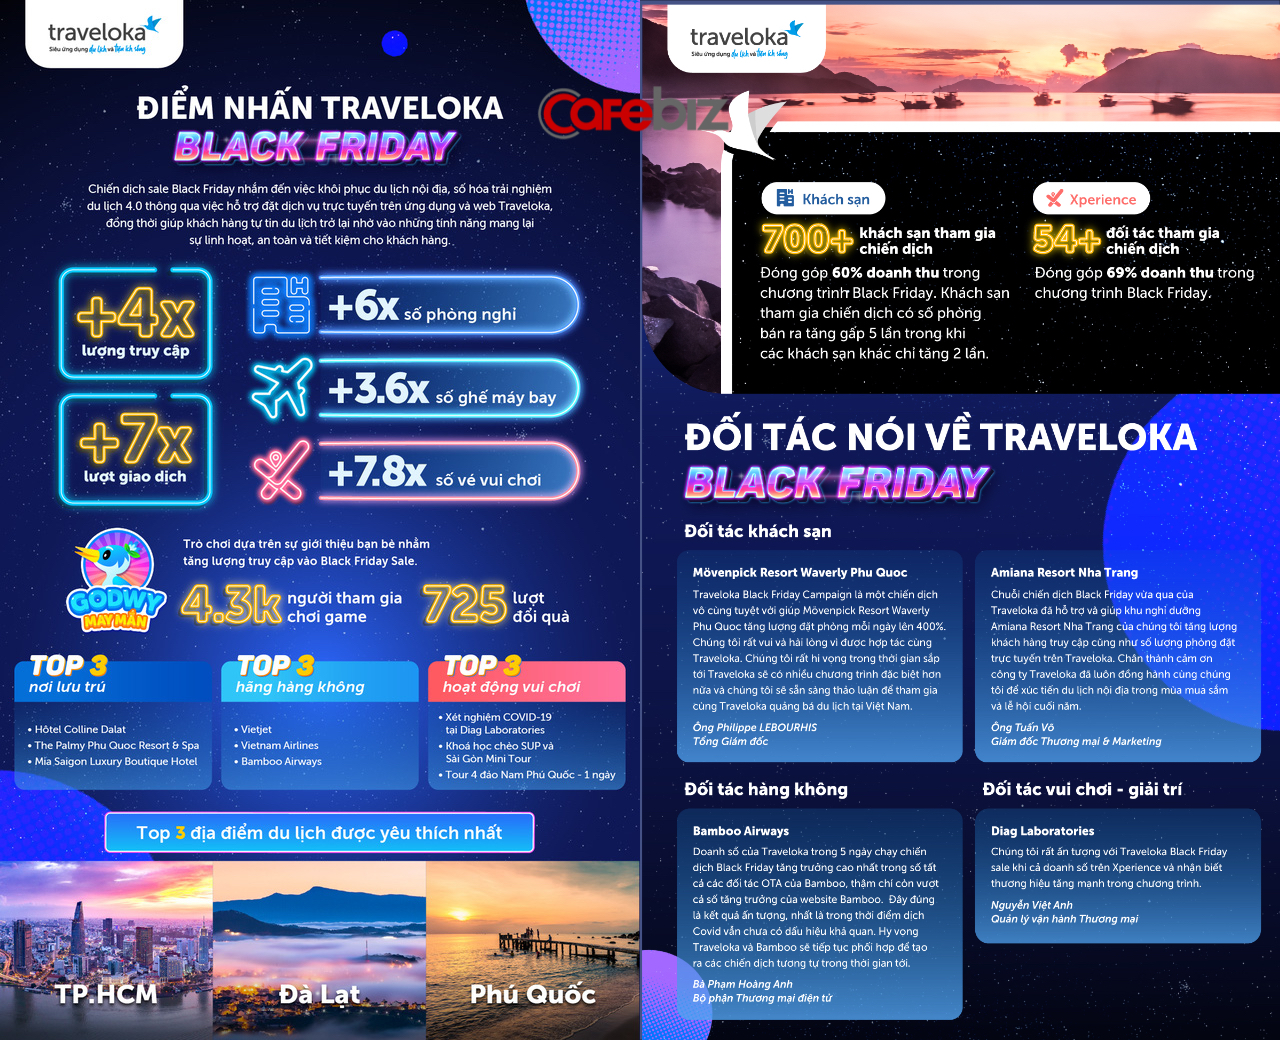 Đông Nam Á ‘khát’ khách Việt: Singapore nhấn vào du lịch an toàn, Traveloka ‘sale lớn’ trong Black Friday, Booking.com tập trung vào khía cạnh bền vững - Ảnh 4.